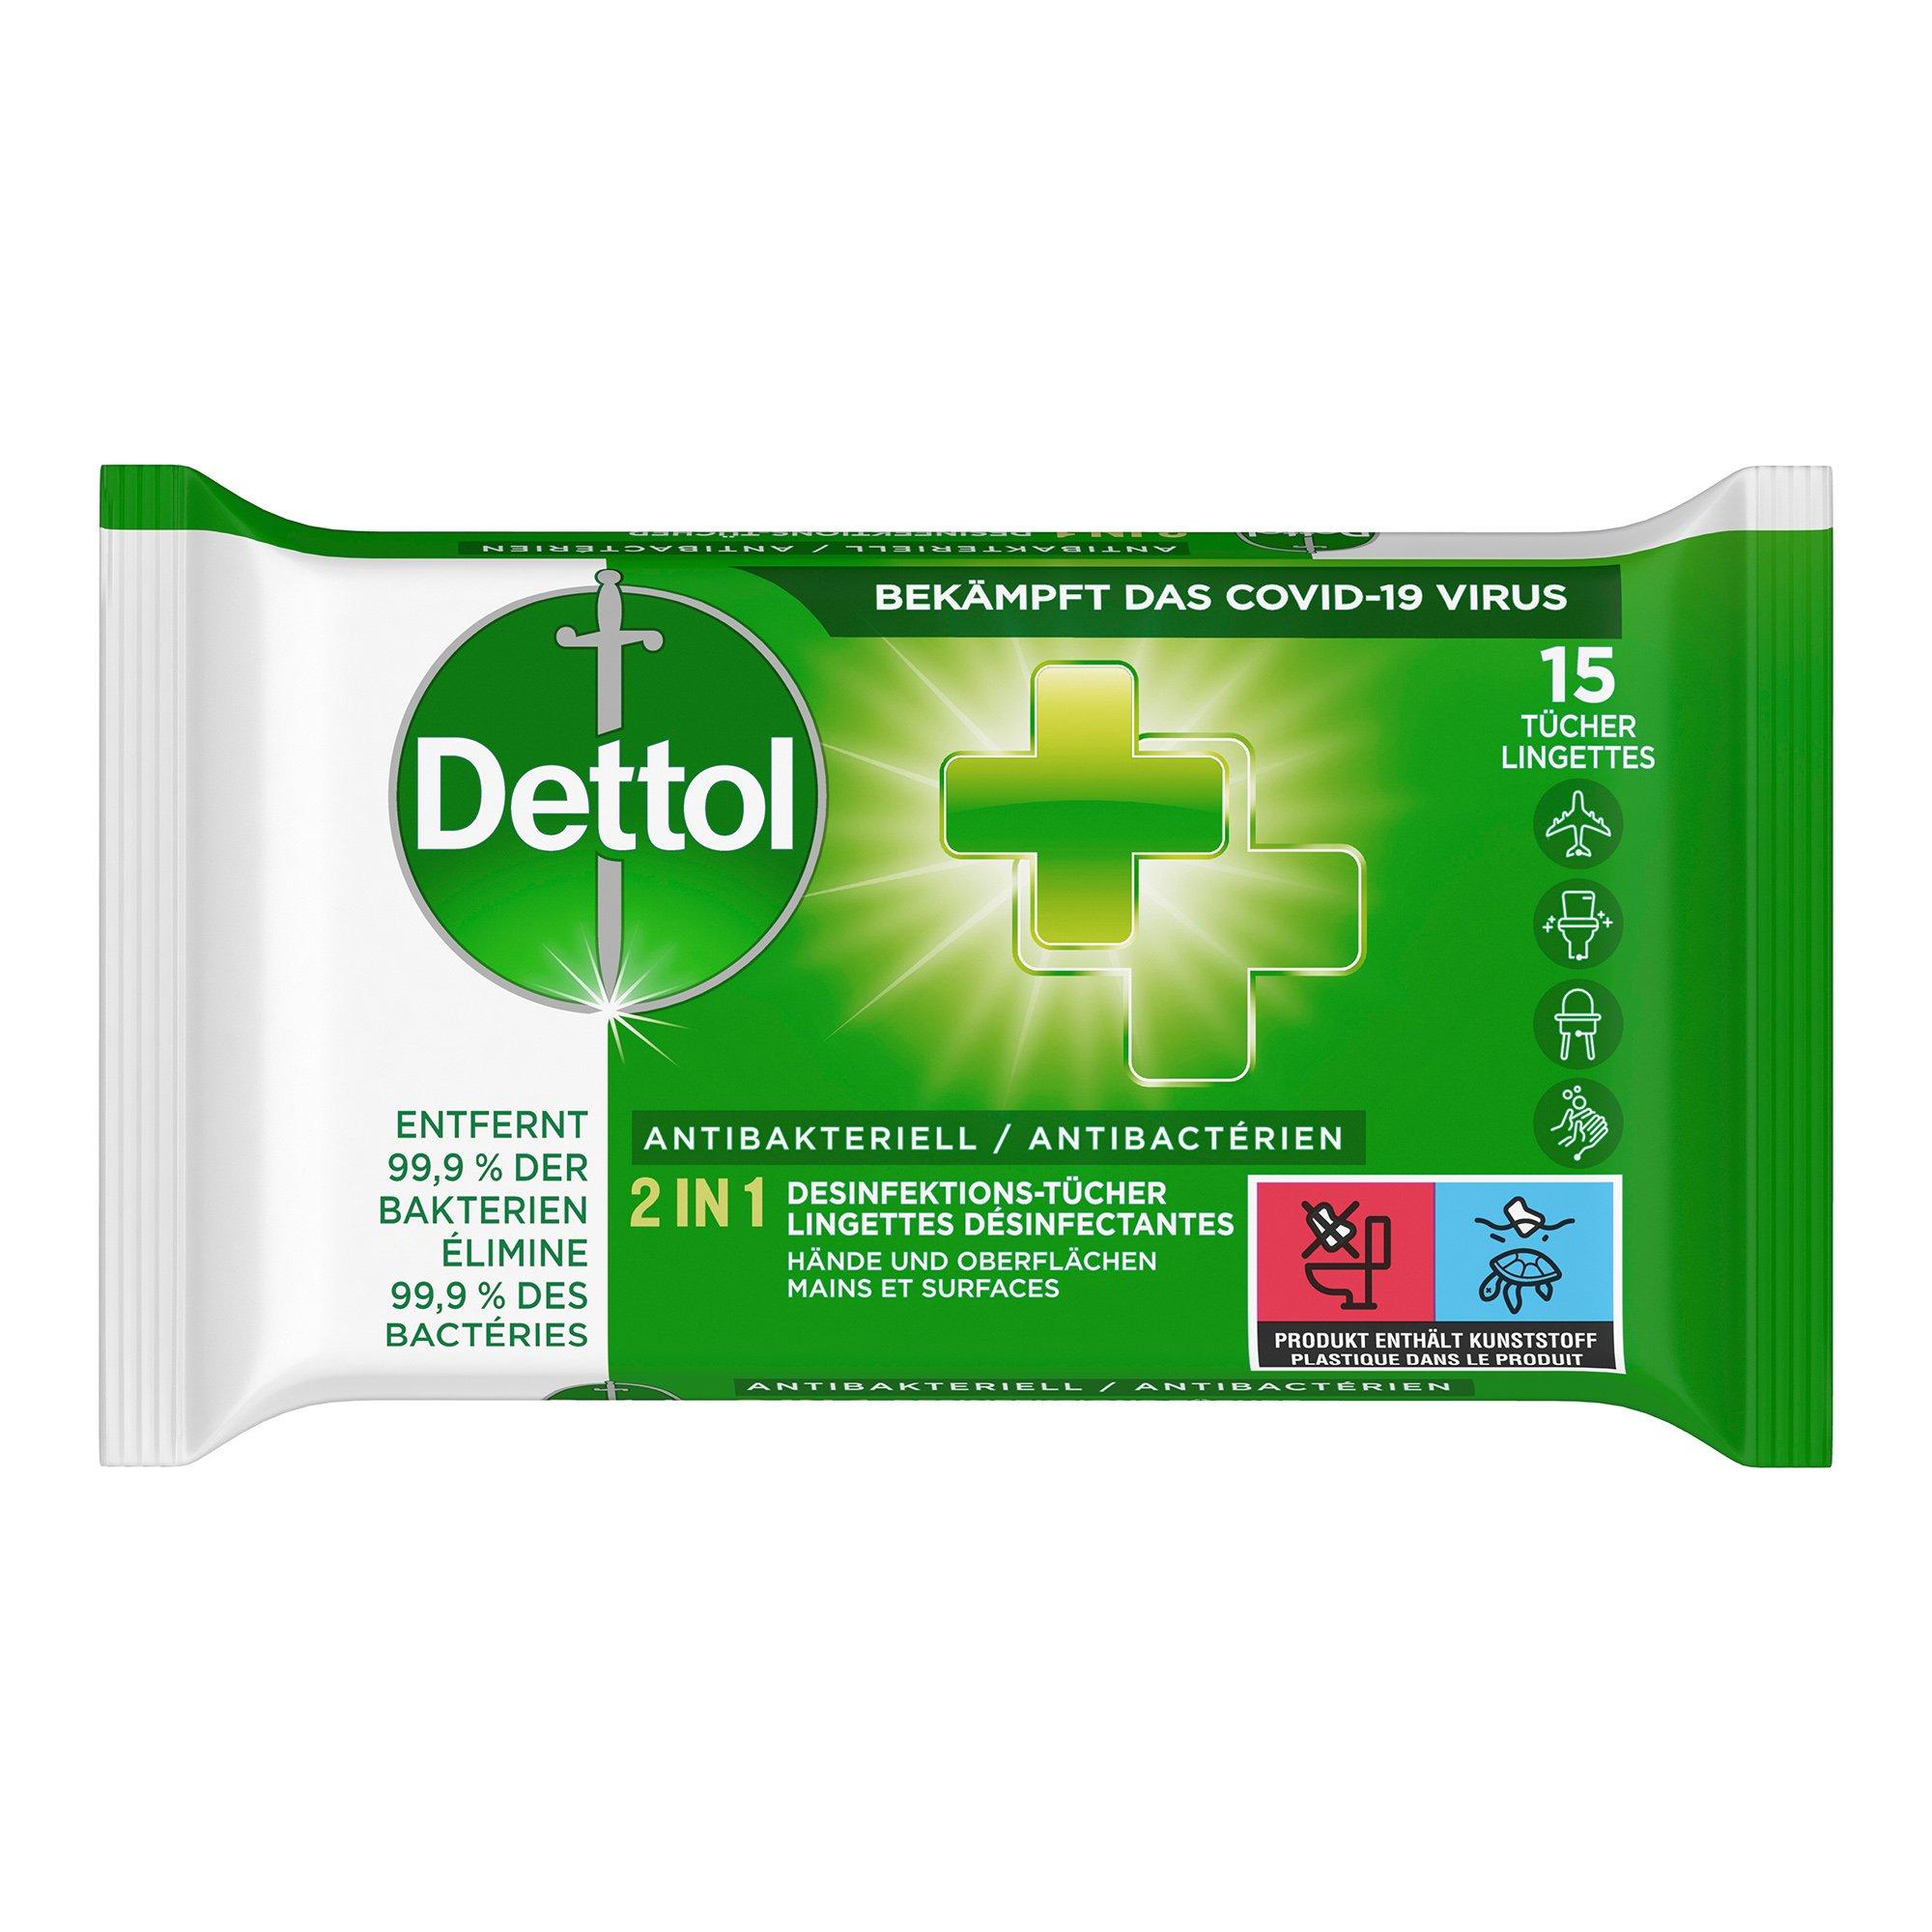 Image of Dettol 2in1 DesinfektionsTücher für Hände und Oberflächen - 15 pieces